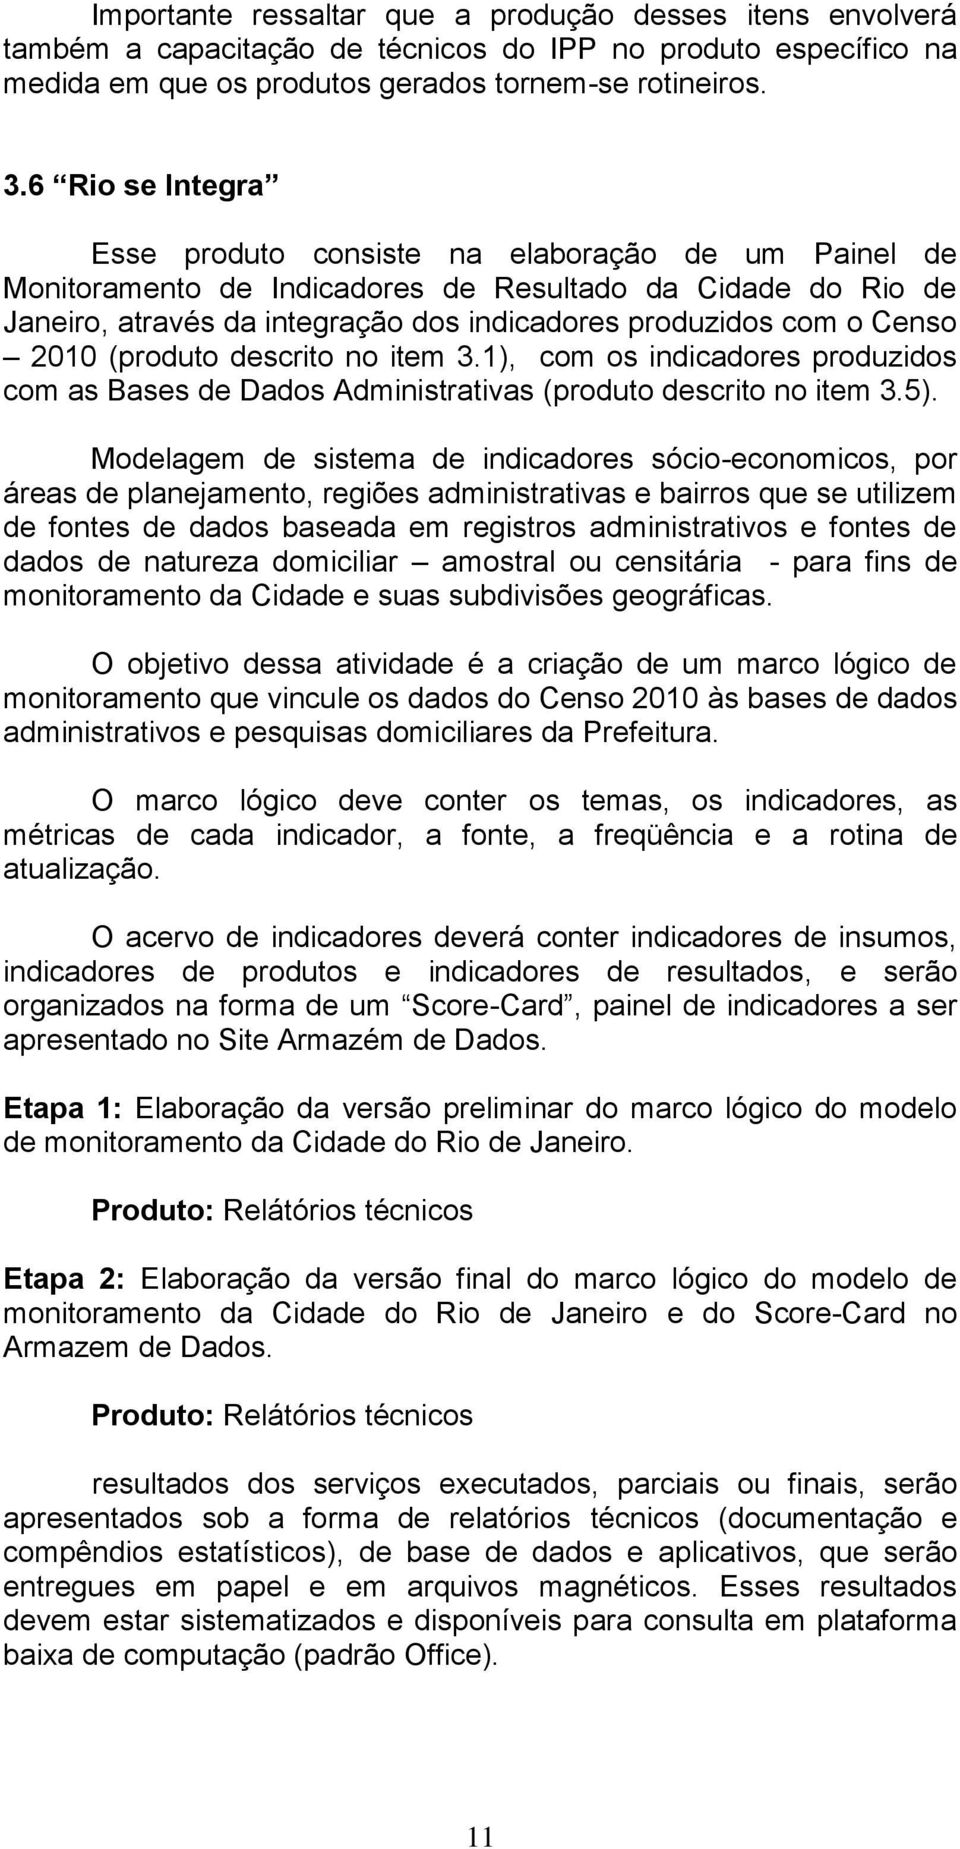 Censo 2010 (produto descrito no item 3.1), com os indicadores produzidos com as Bases de Dados Administrativas (produto descrito no item 3.5).